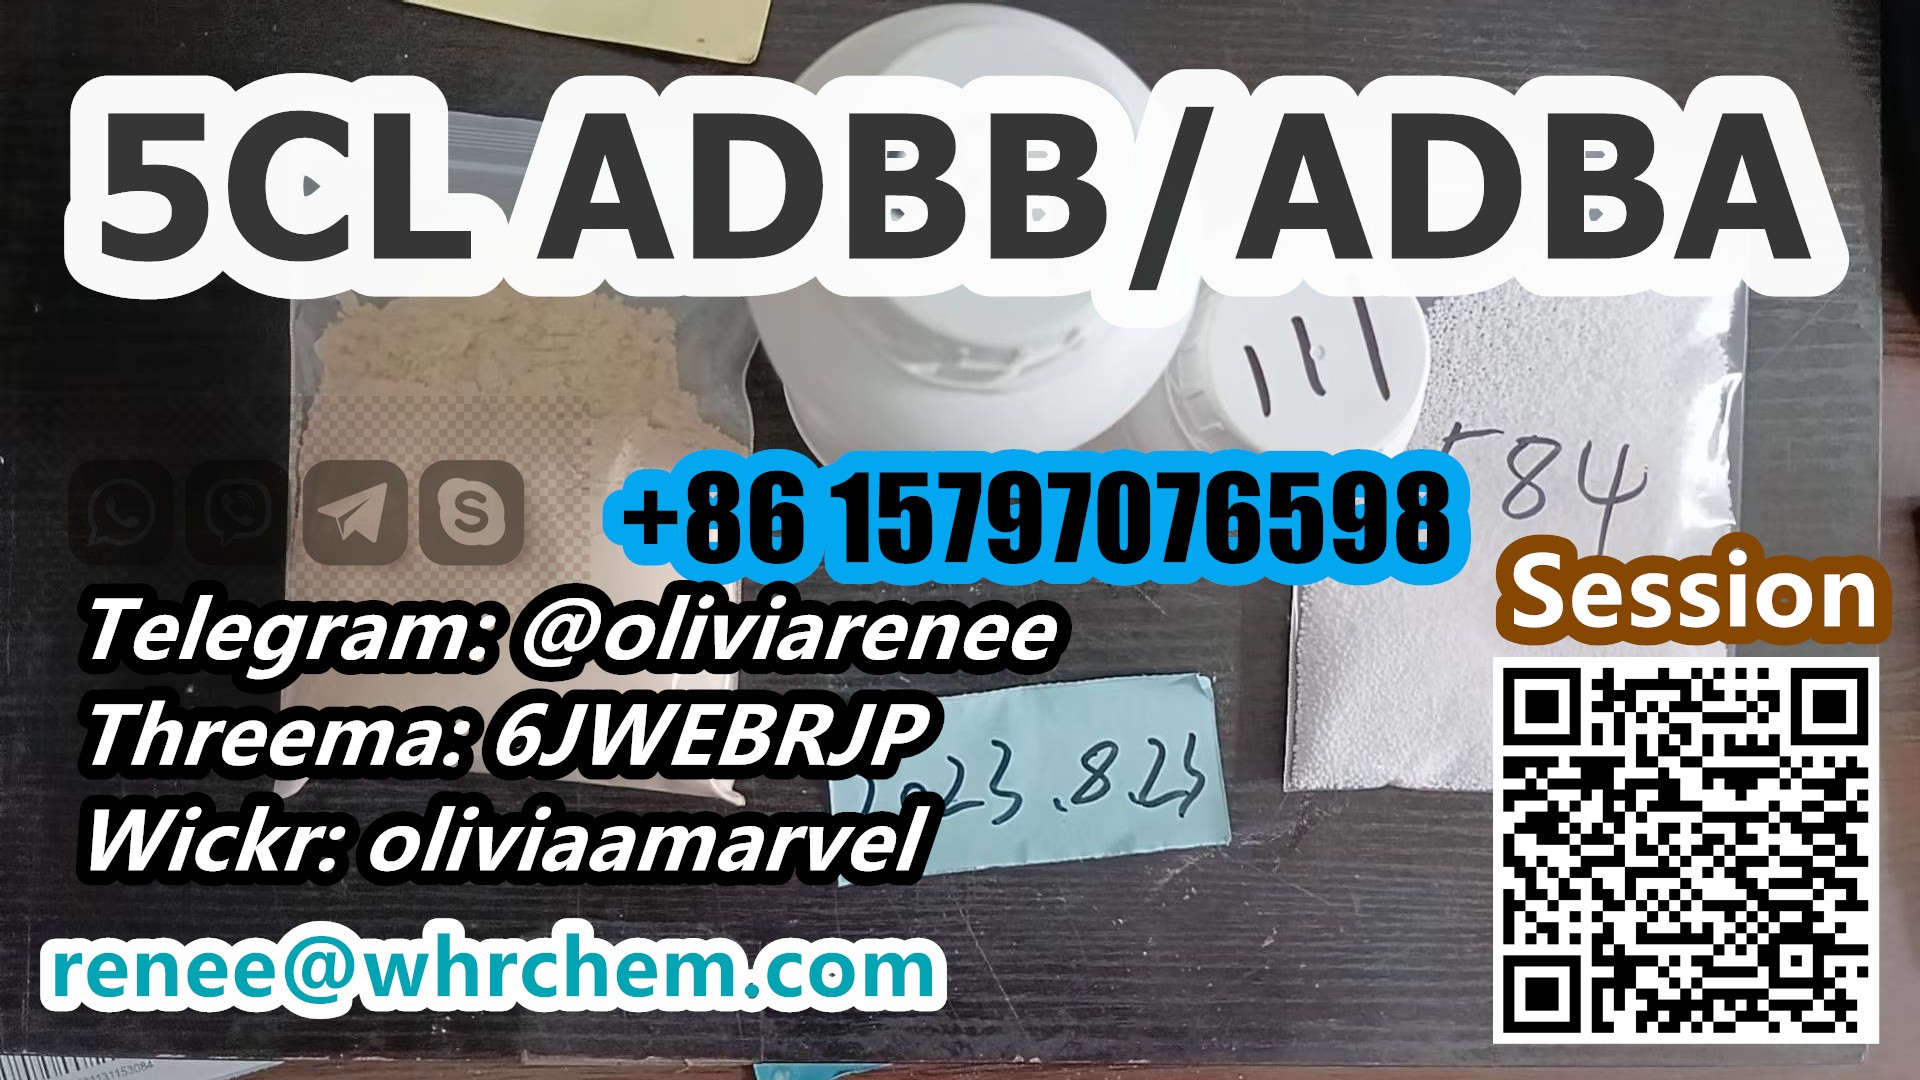 5CL ADBB/ADBA + 8615797076598